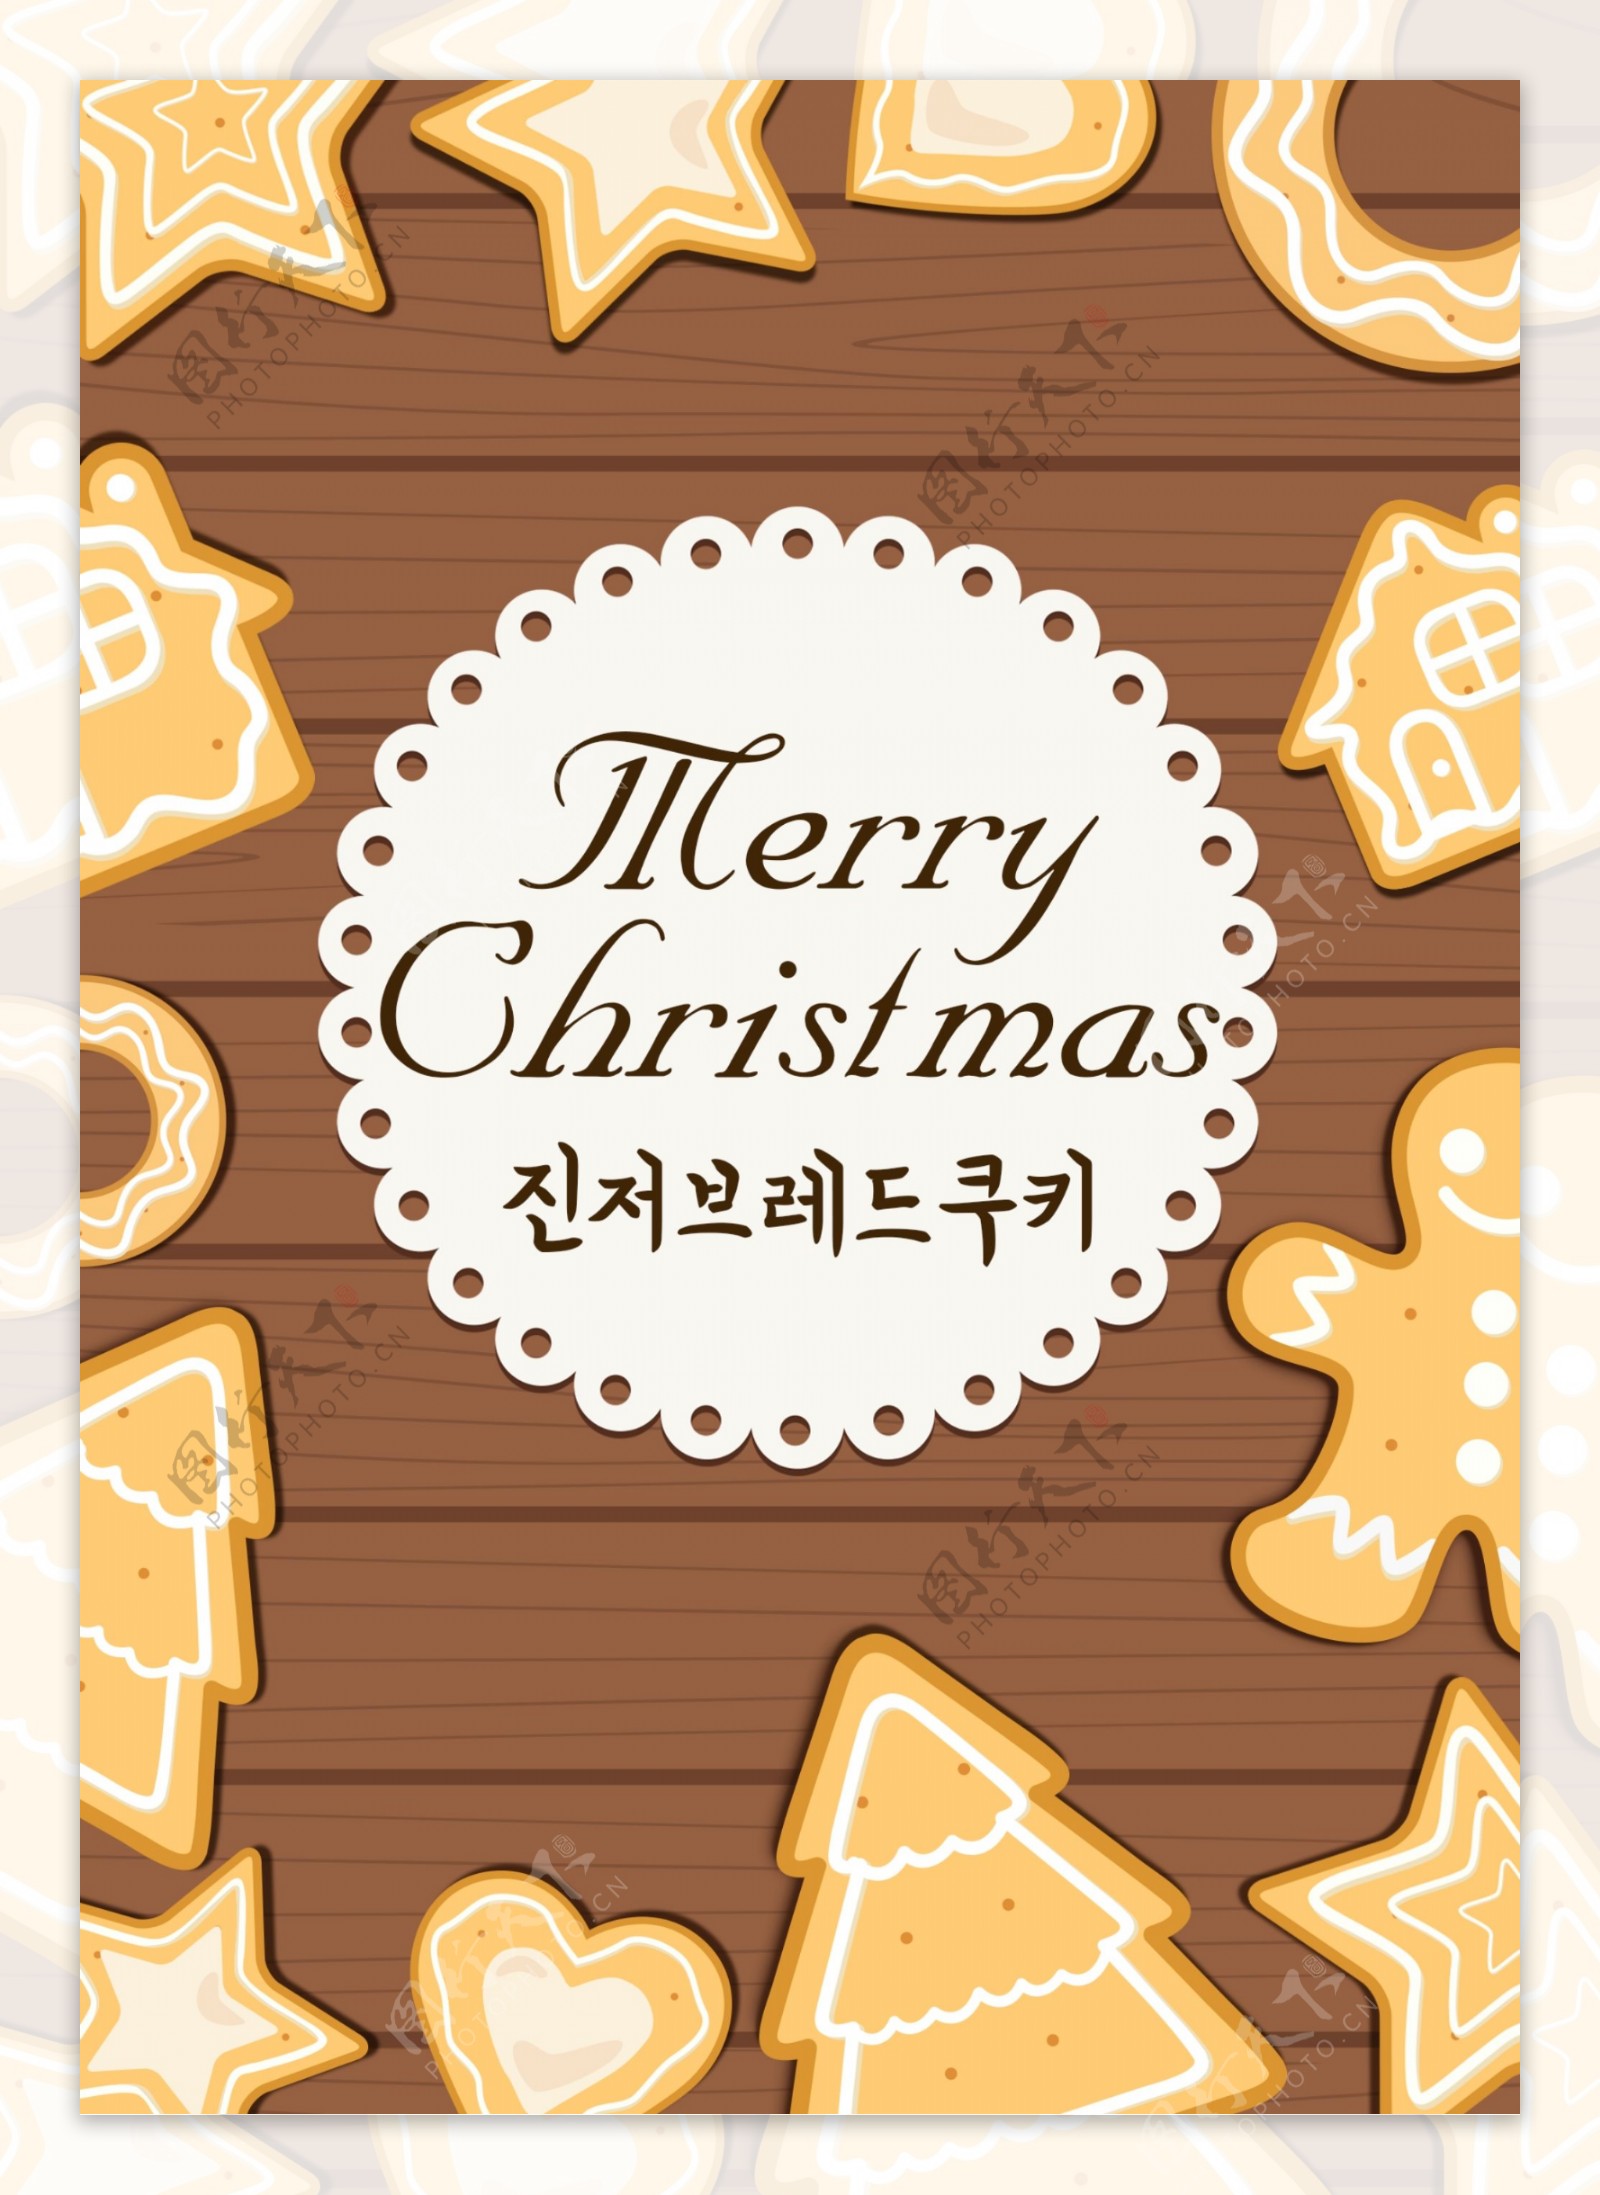 布朗简单的姜饼人动画片圣诞节海报设计